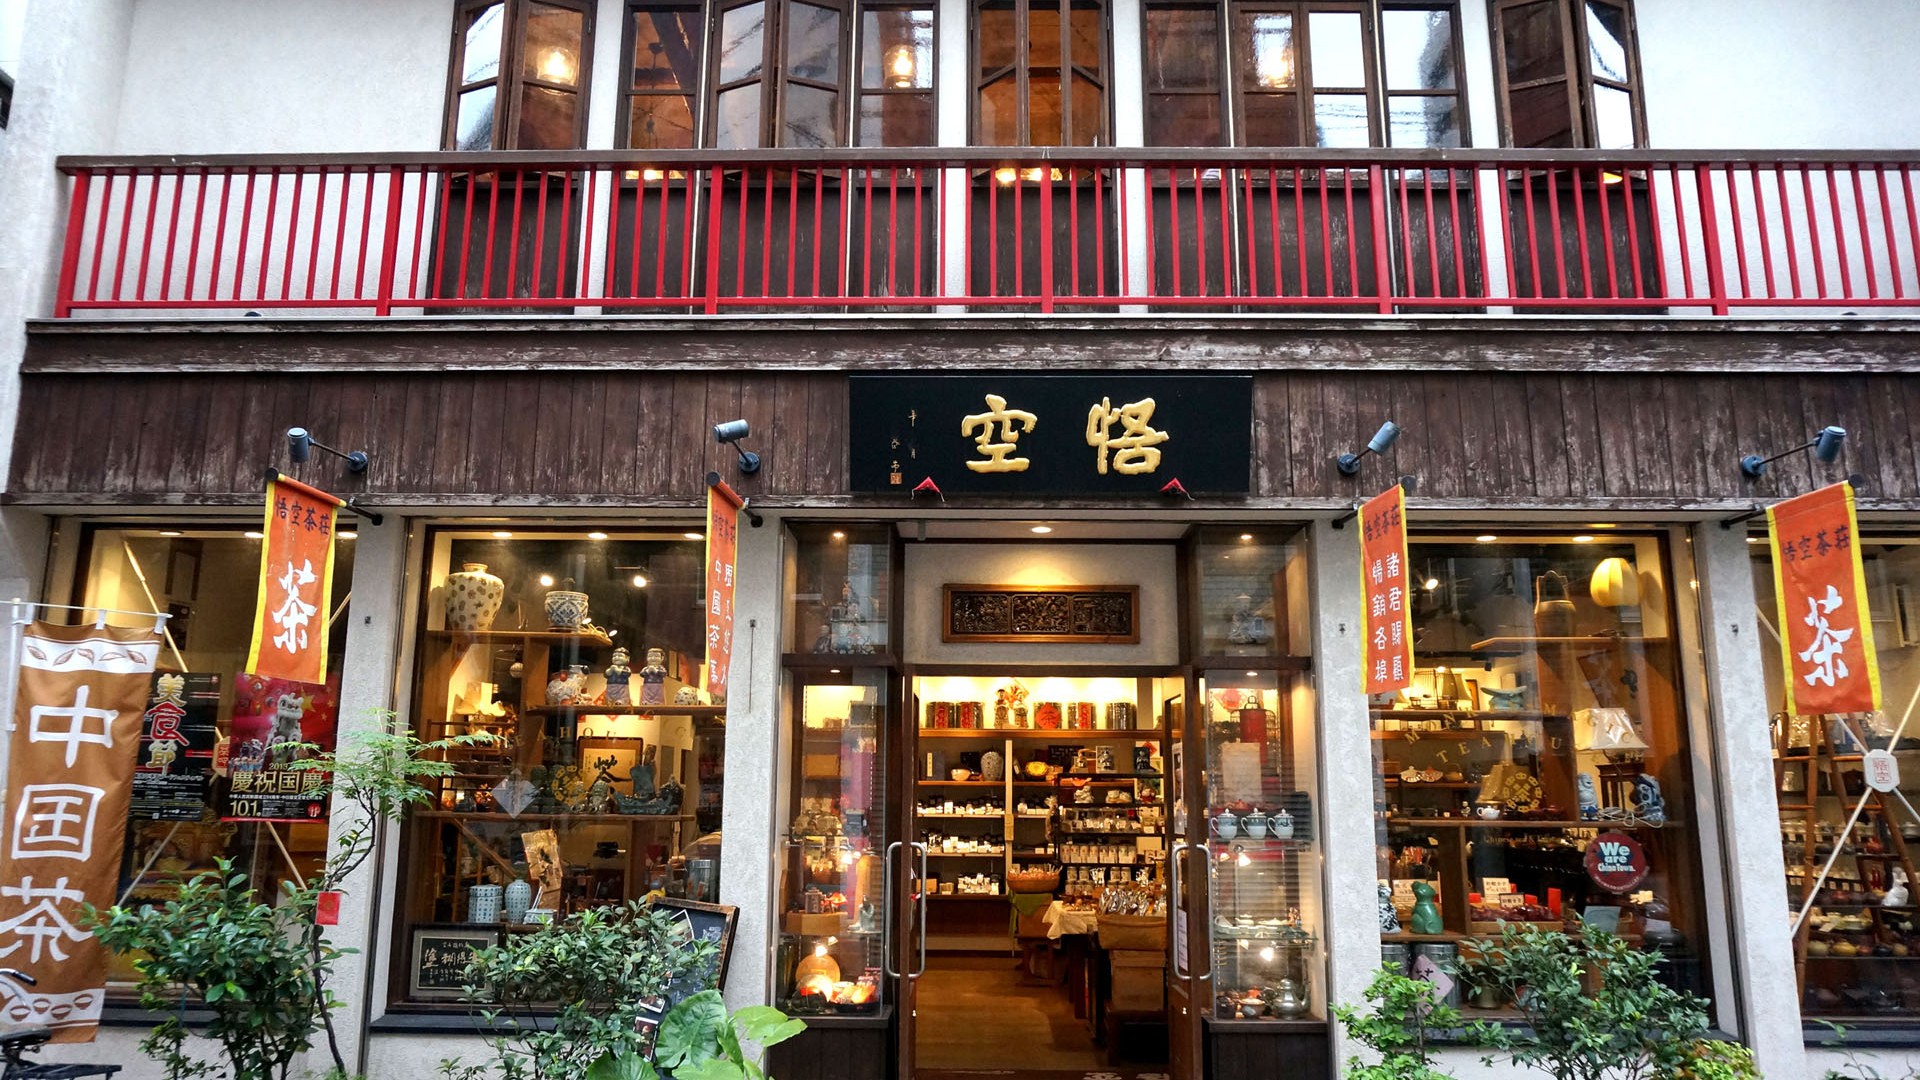 ร้านขายชาจีนโดยเฉพาะ